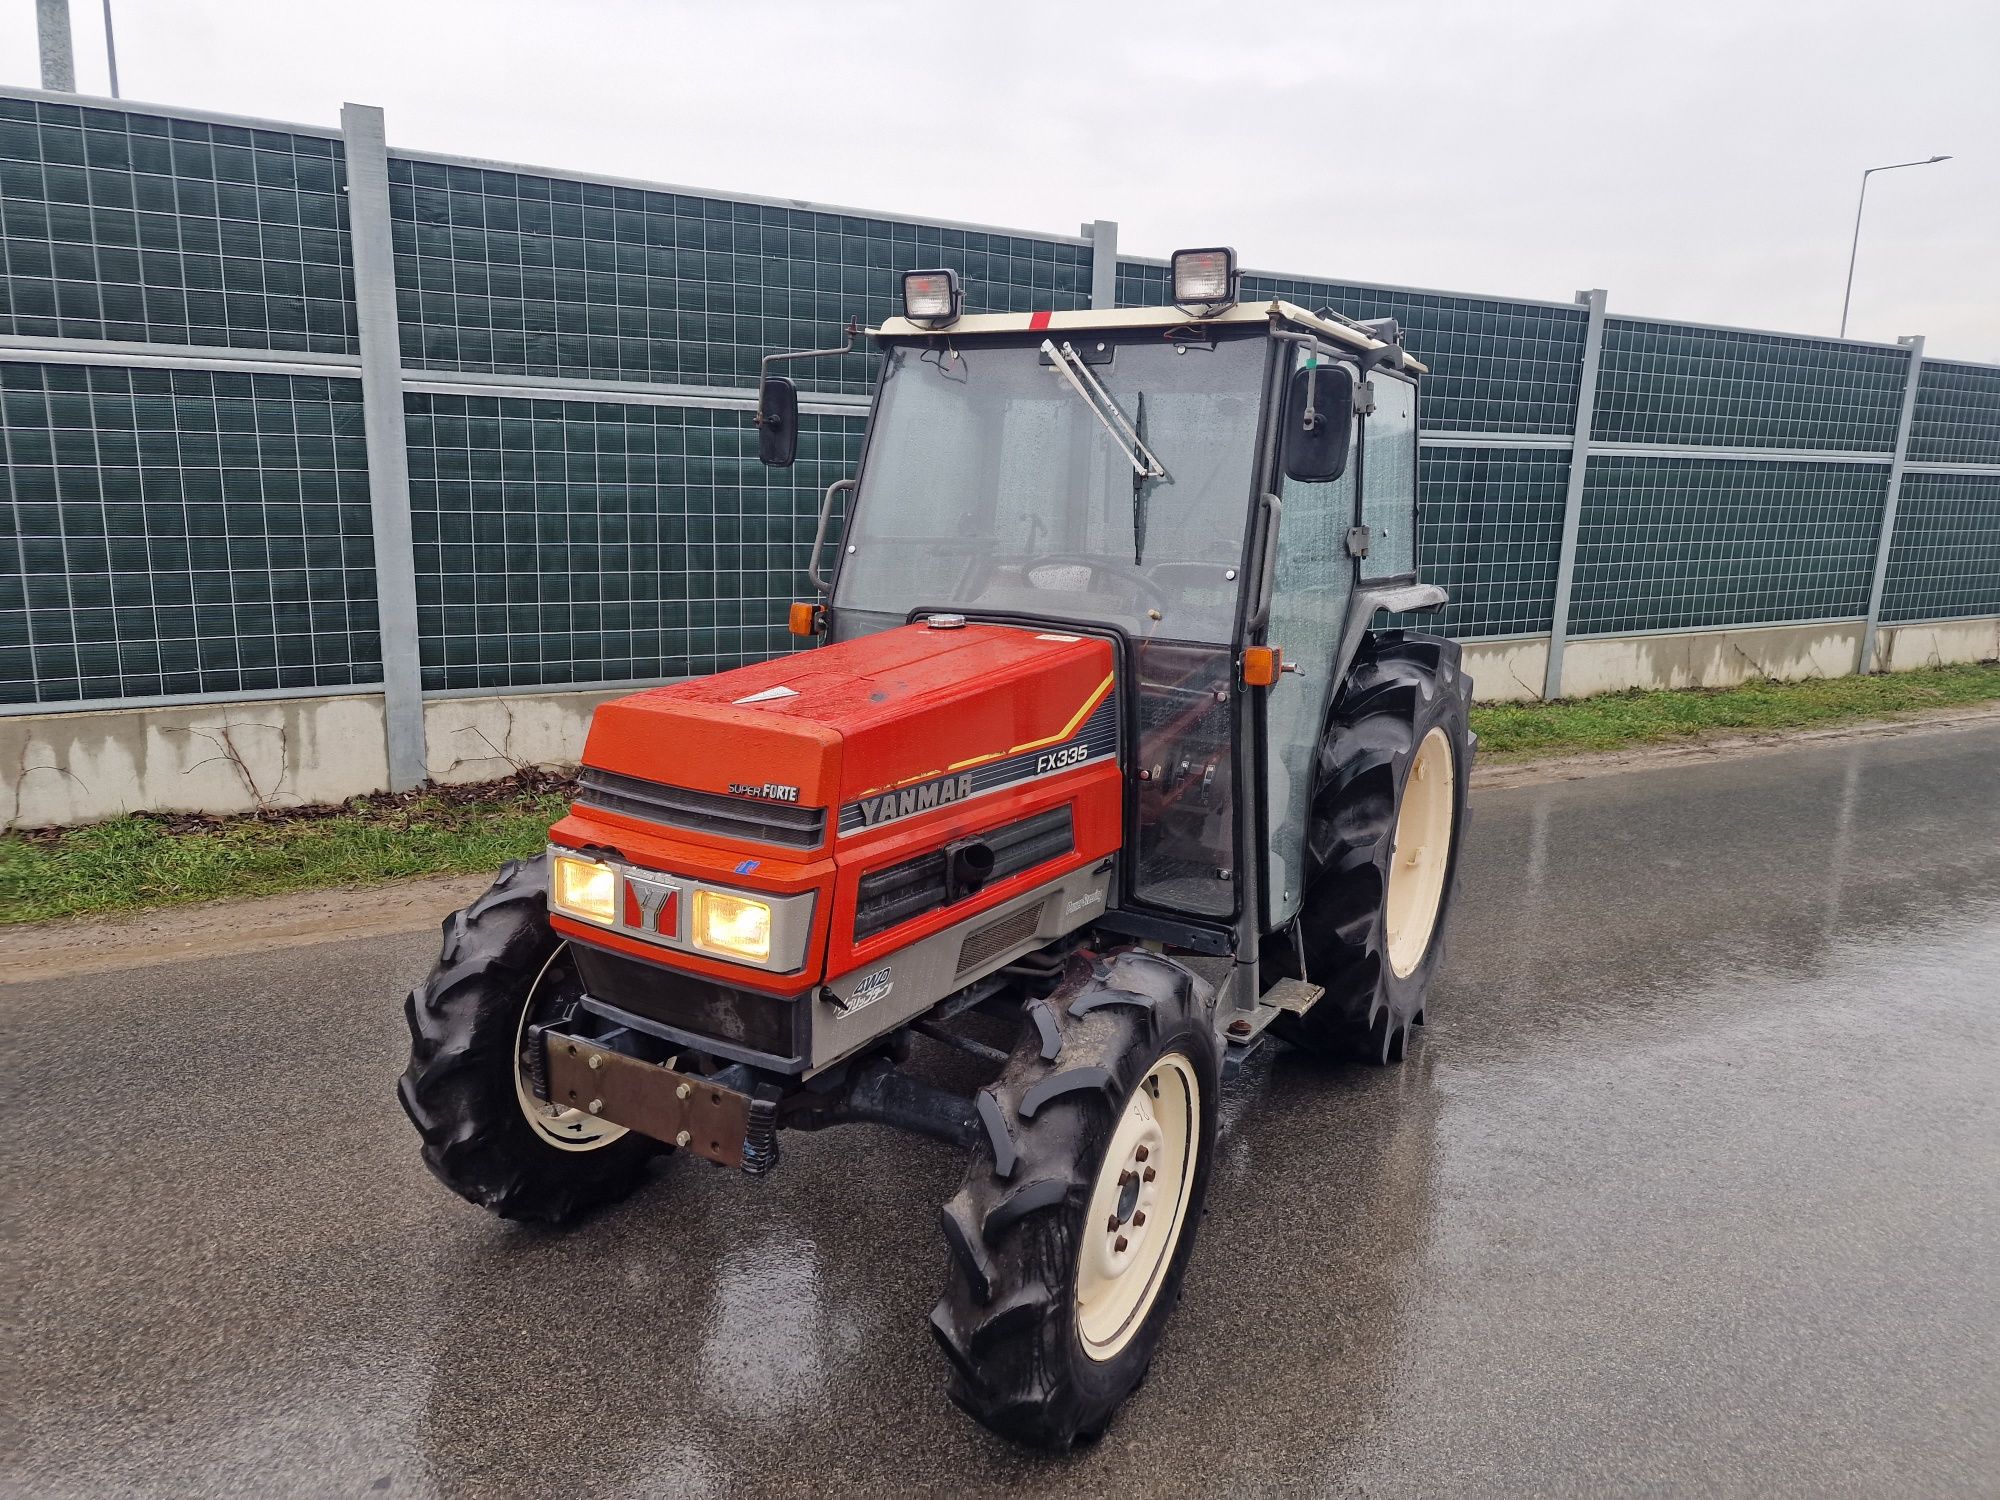 Traktor Japonski YanmarFX335 z Gwarancją Możliwość rejstraci